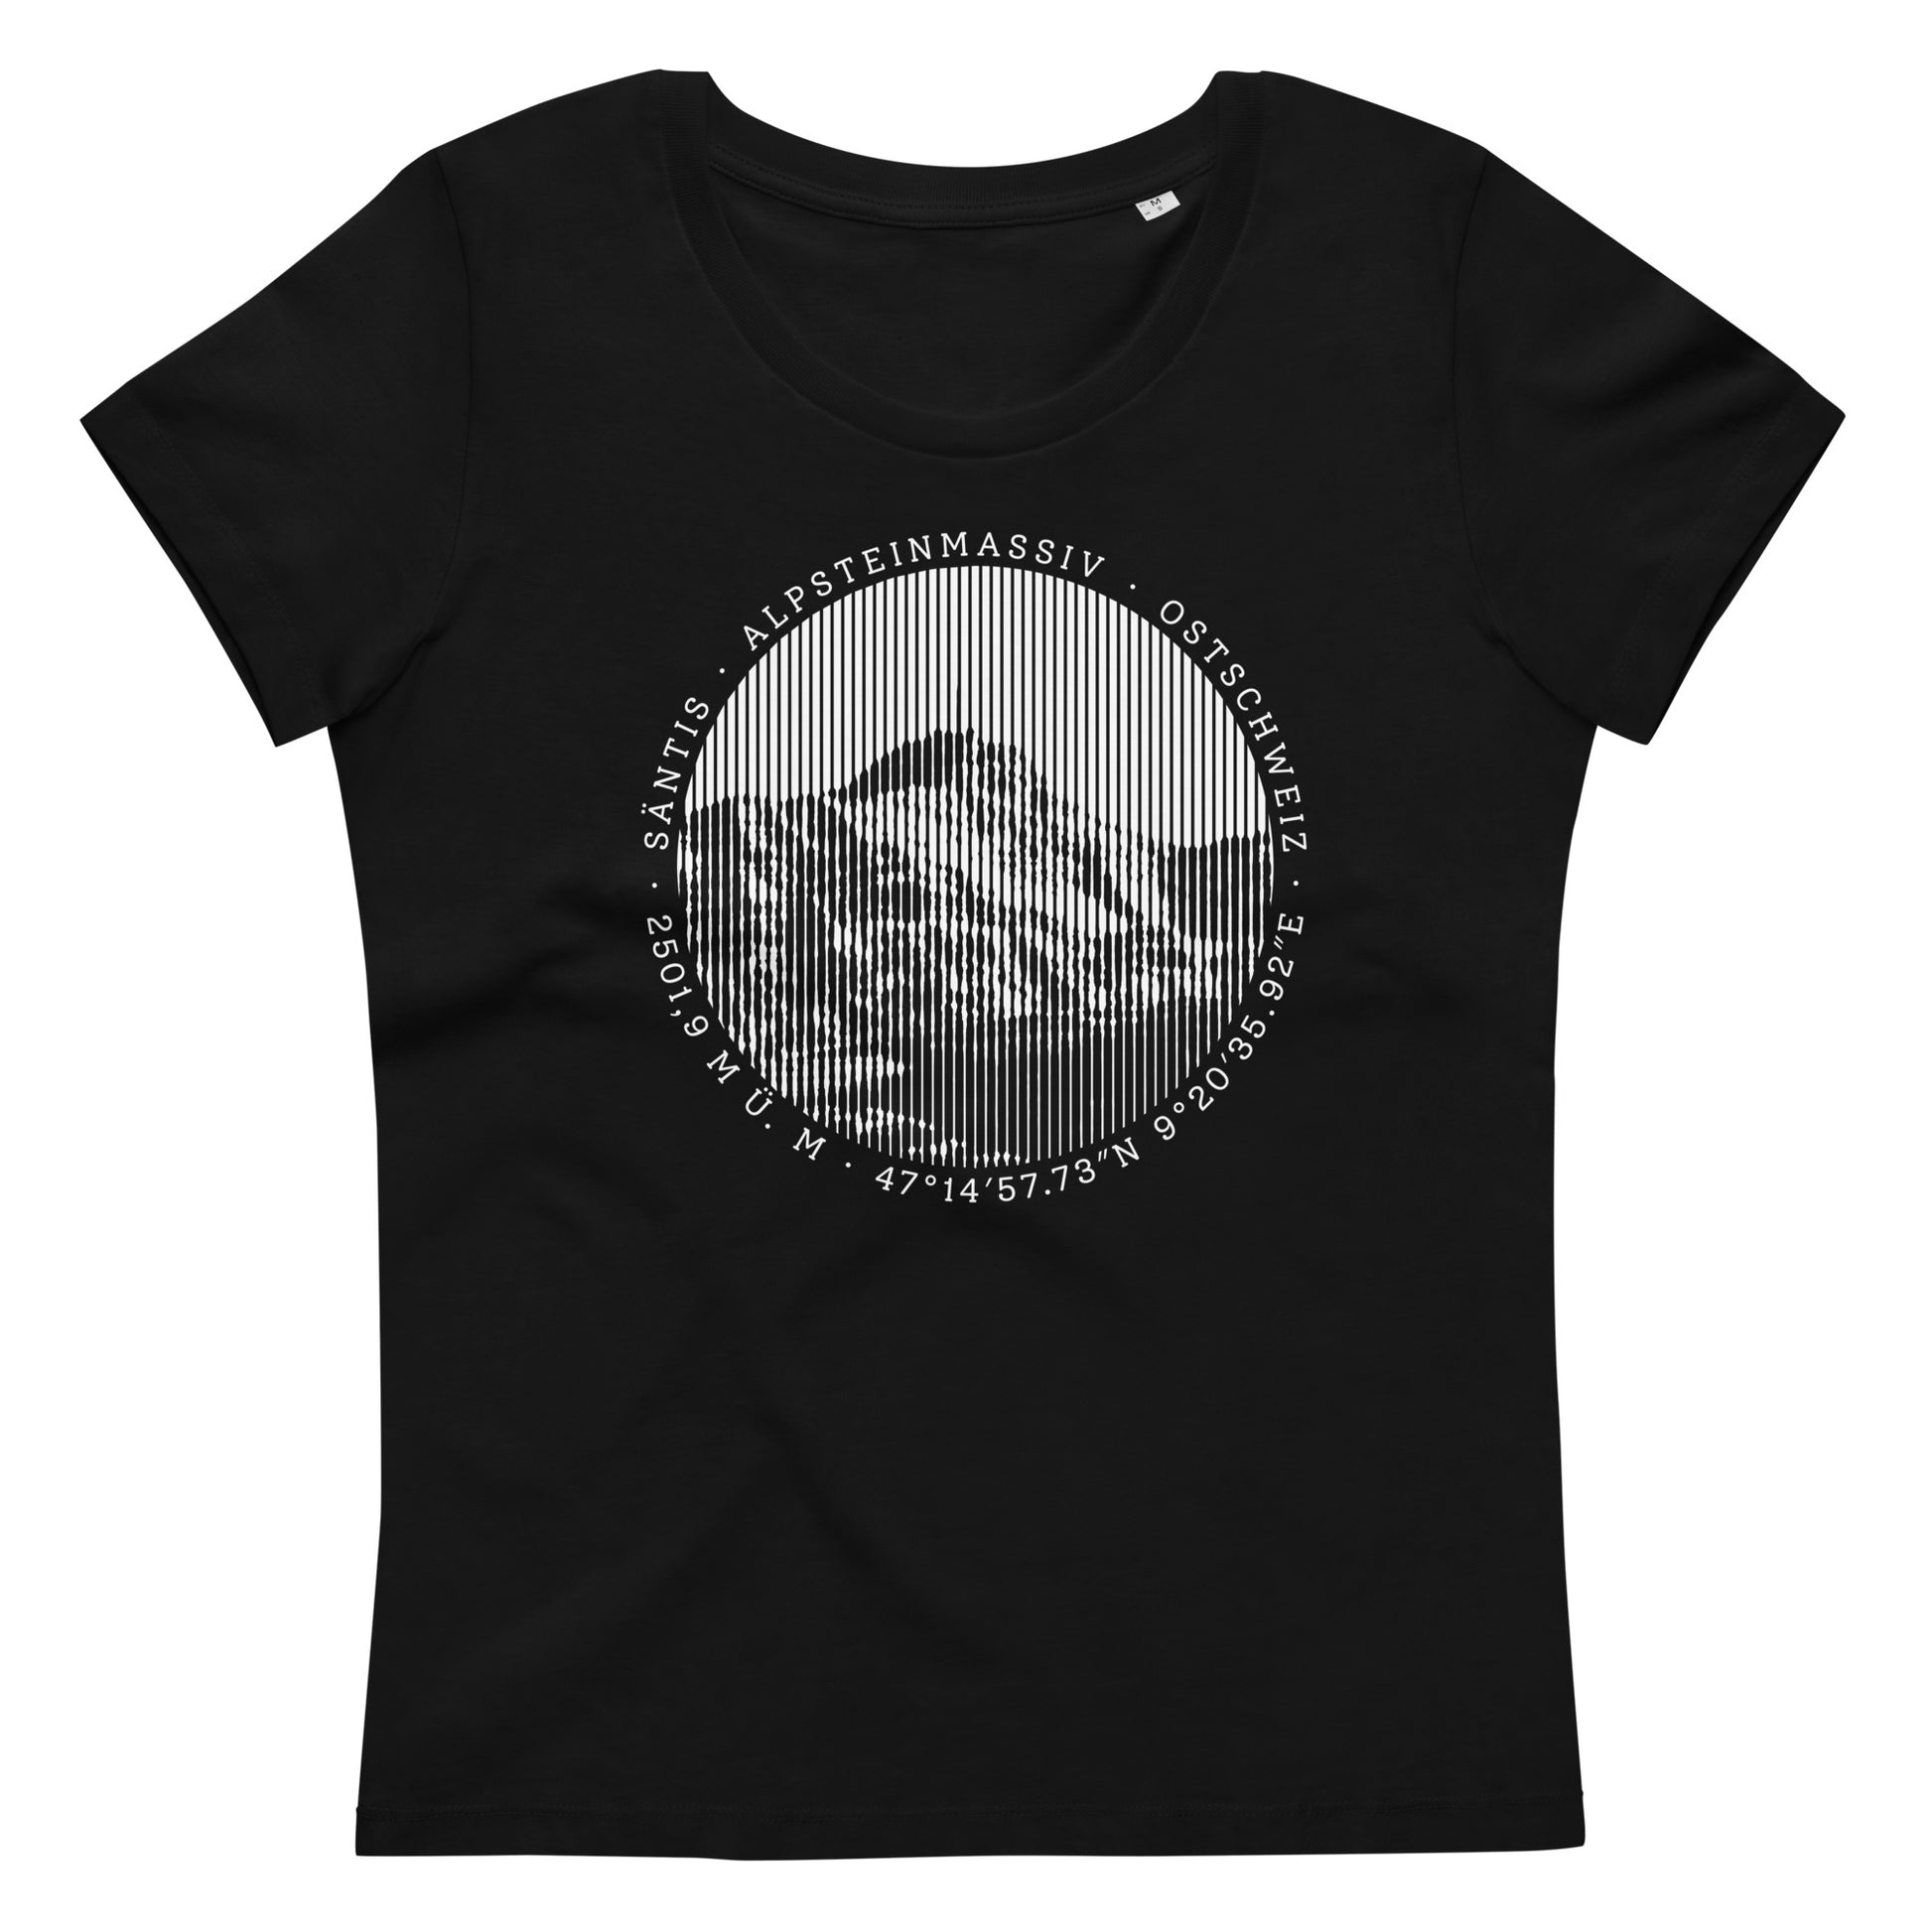 Schwarzes, tailliertes T-Shirt mit einem Aufdruck des Berges Säntis im Alpsteinmassiv in der Ostschweiz. Das T-Shirt ist aus Bio-Baumwolle und gehört zur Säntis-Collection der Marke Vallada.